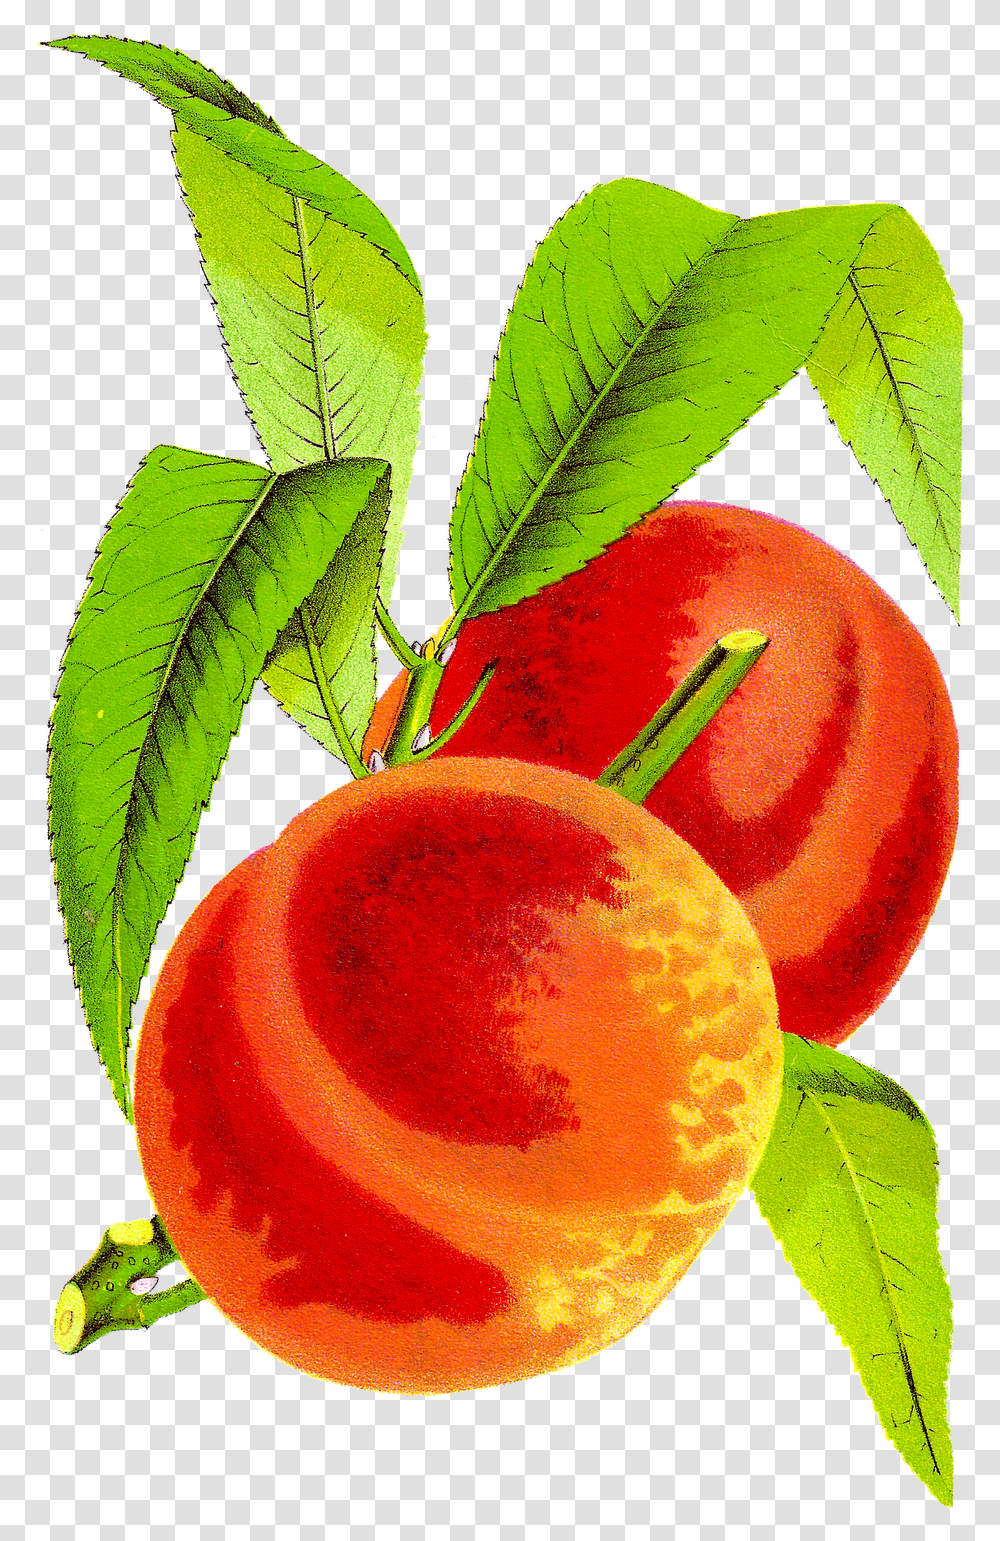 Peach Cobbler Kid Free Download Clipart Vintage Peach Clip Art, Plant, Fruit, Food, Produce Transparent Png